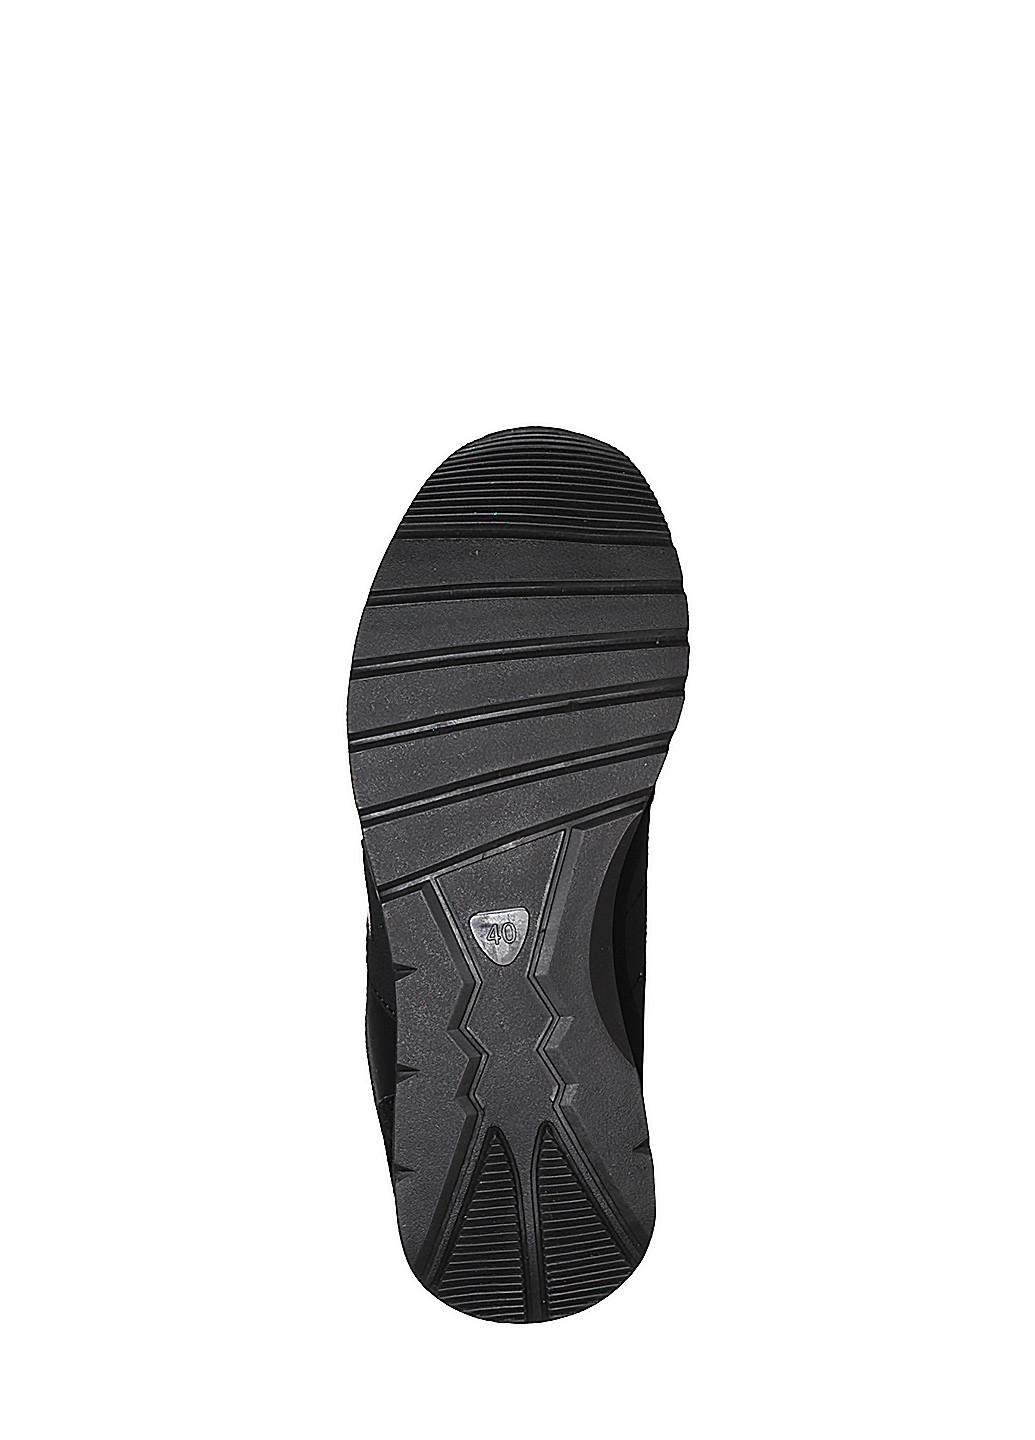 Черные демисезонные кроссовки u1689 black Jomix